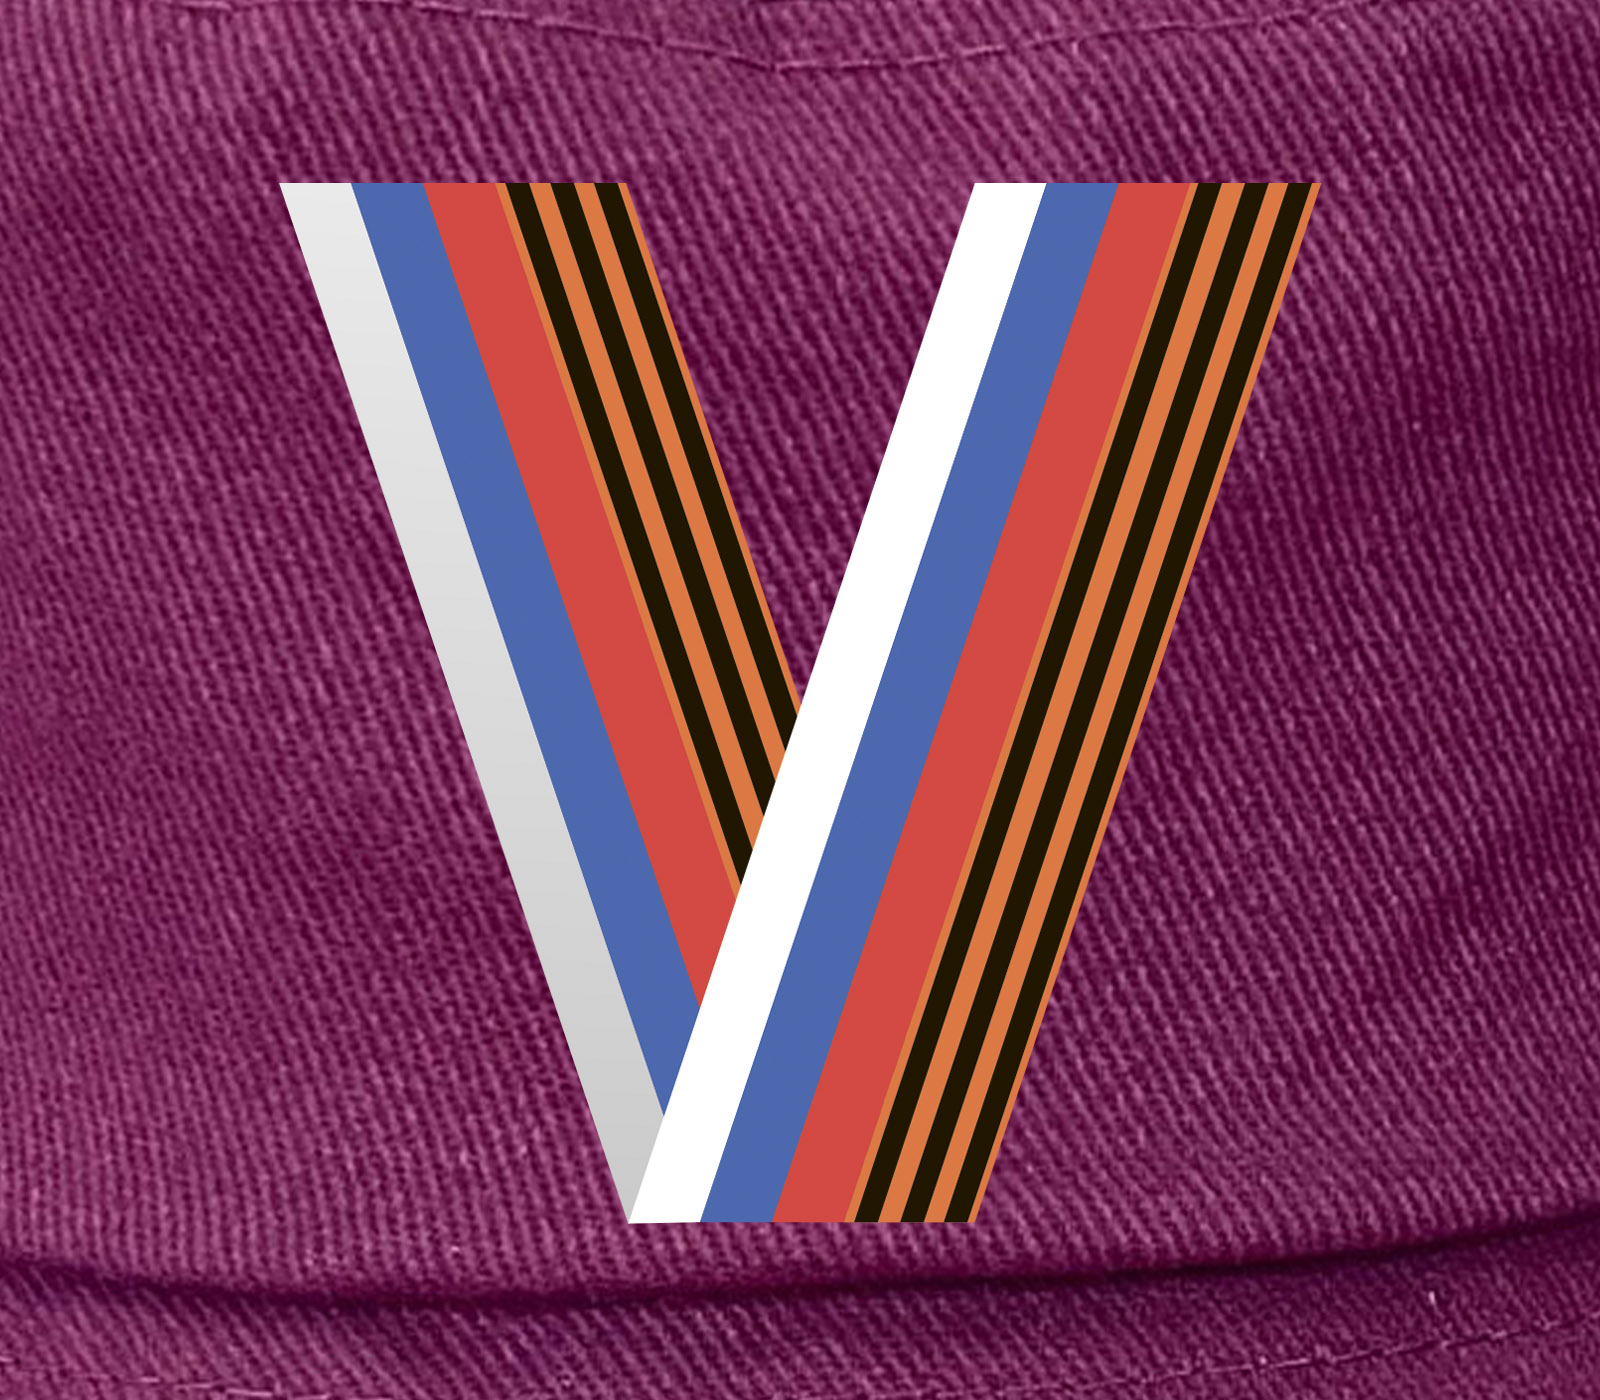 Стильная панама с патриотичным символом V